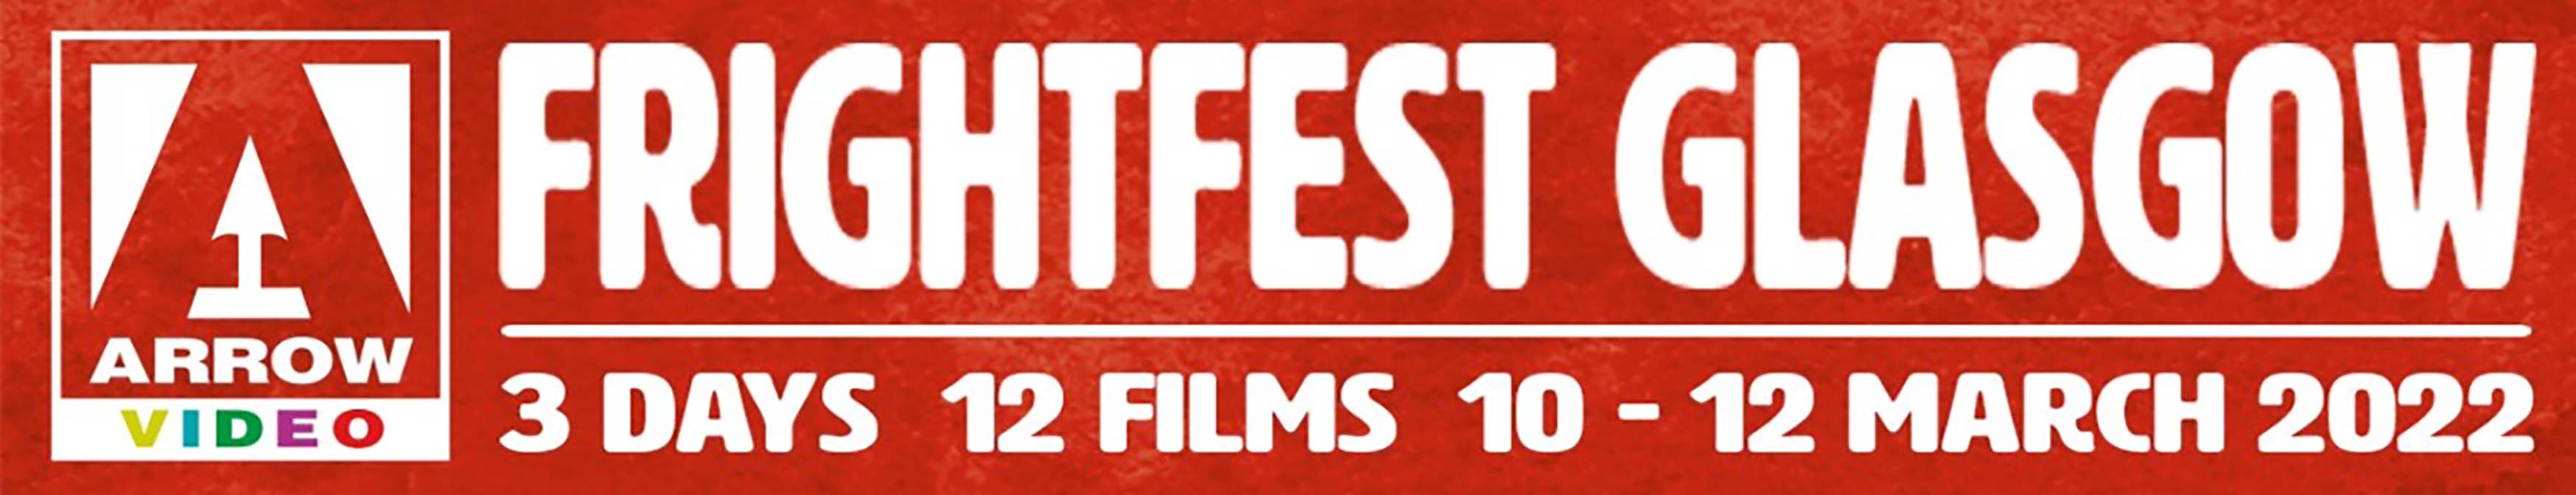 Arrow Video FrightFest 2022 announces bumper Glasgow Film Festival line-up